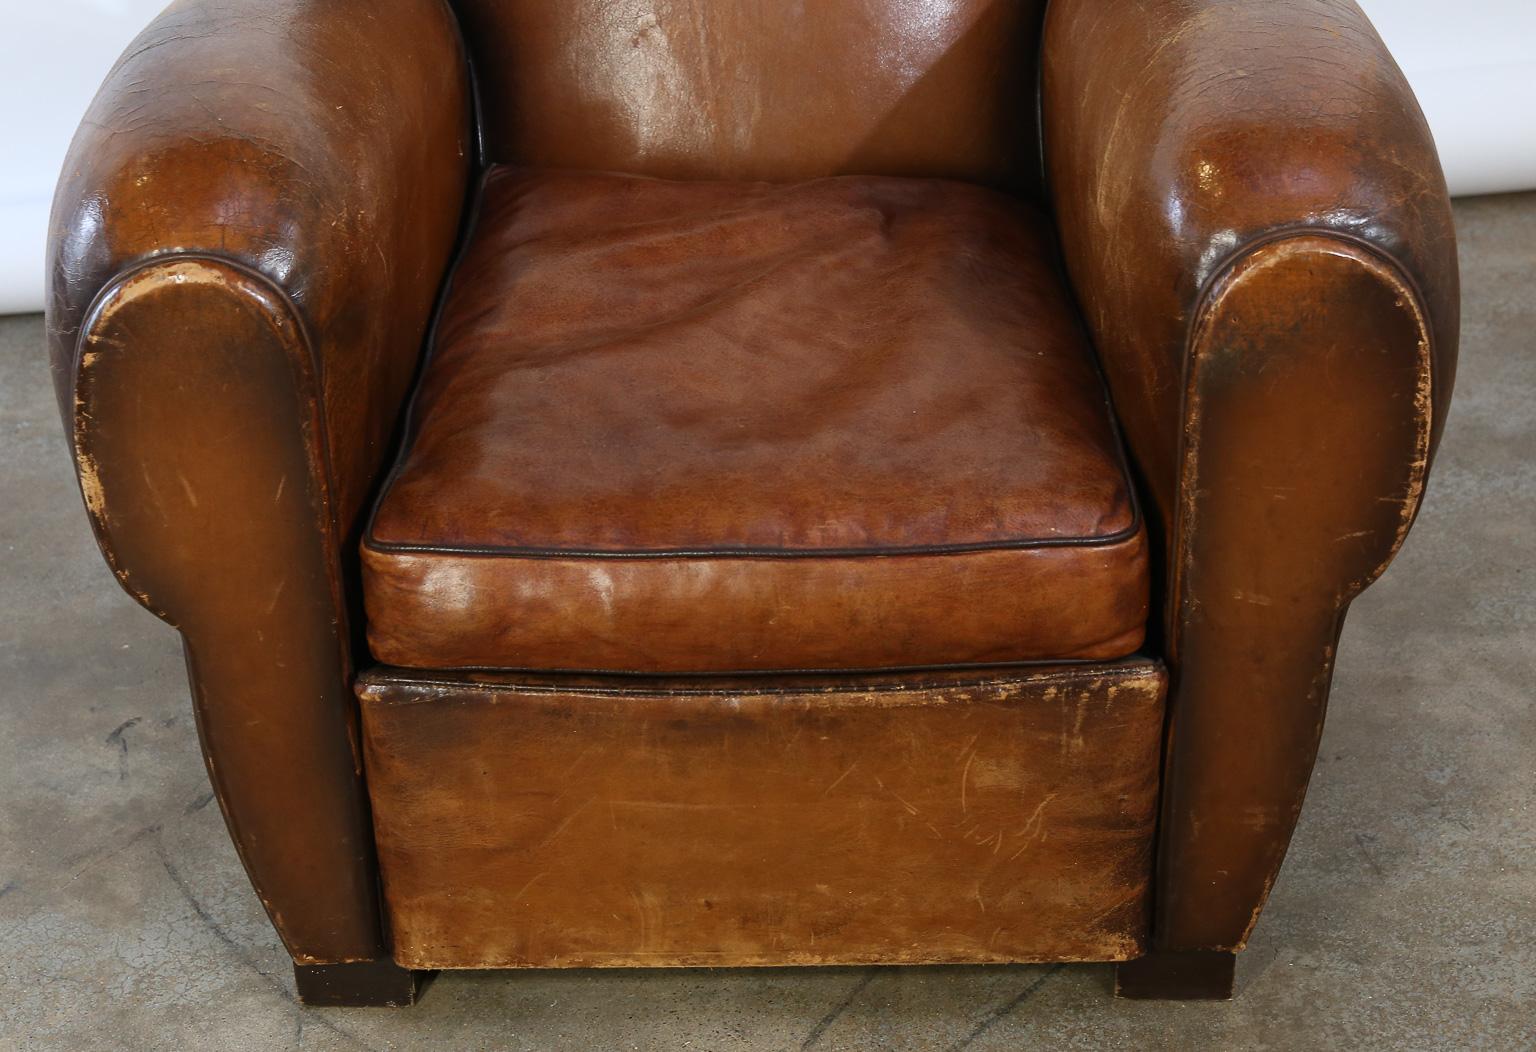 Vintage French Leather Club Chair (Französisch)